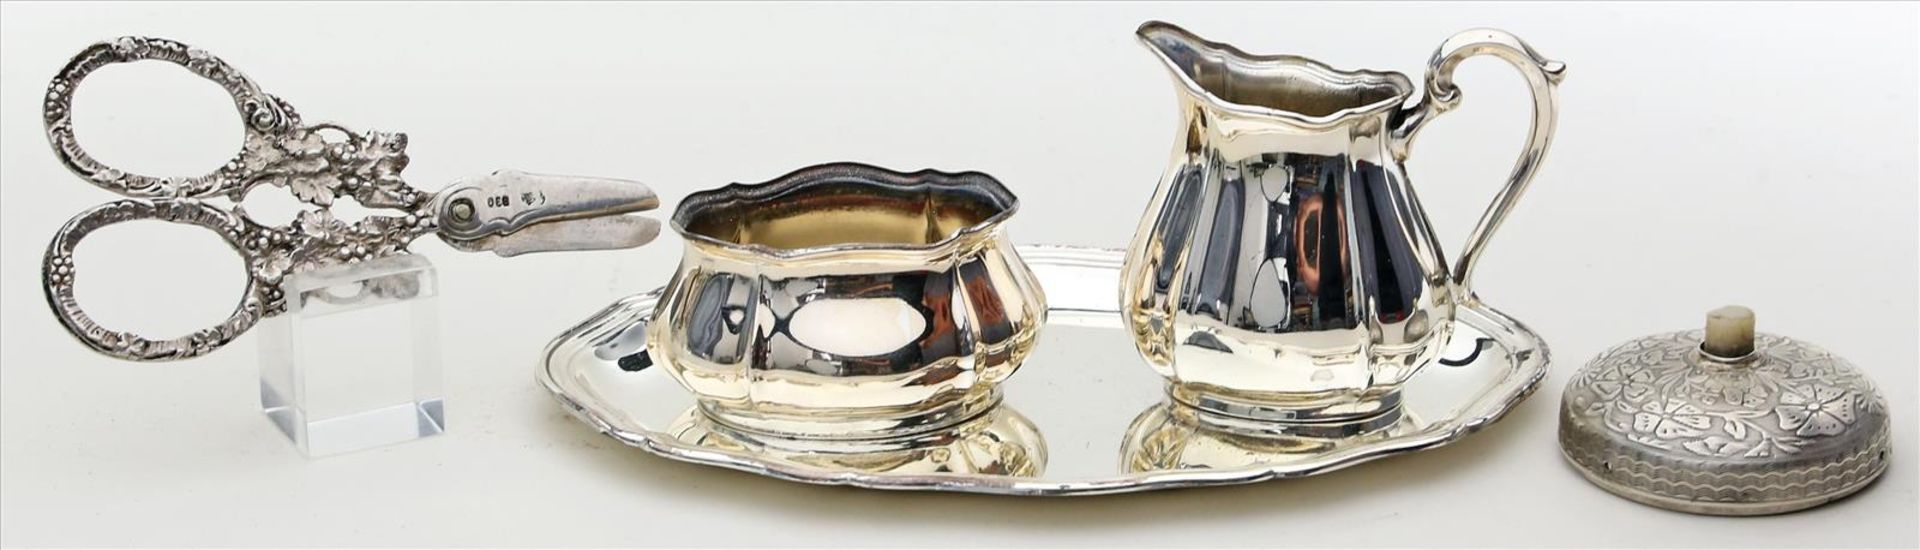 5 Teile Silber.830/000 bzw. 835/000 Silber, 129 g. Bestehend aus: Klingelknopf (stärkere